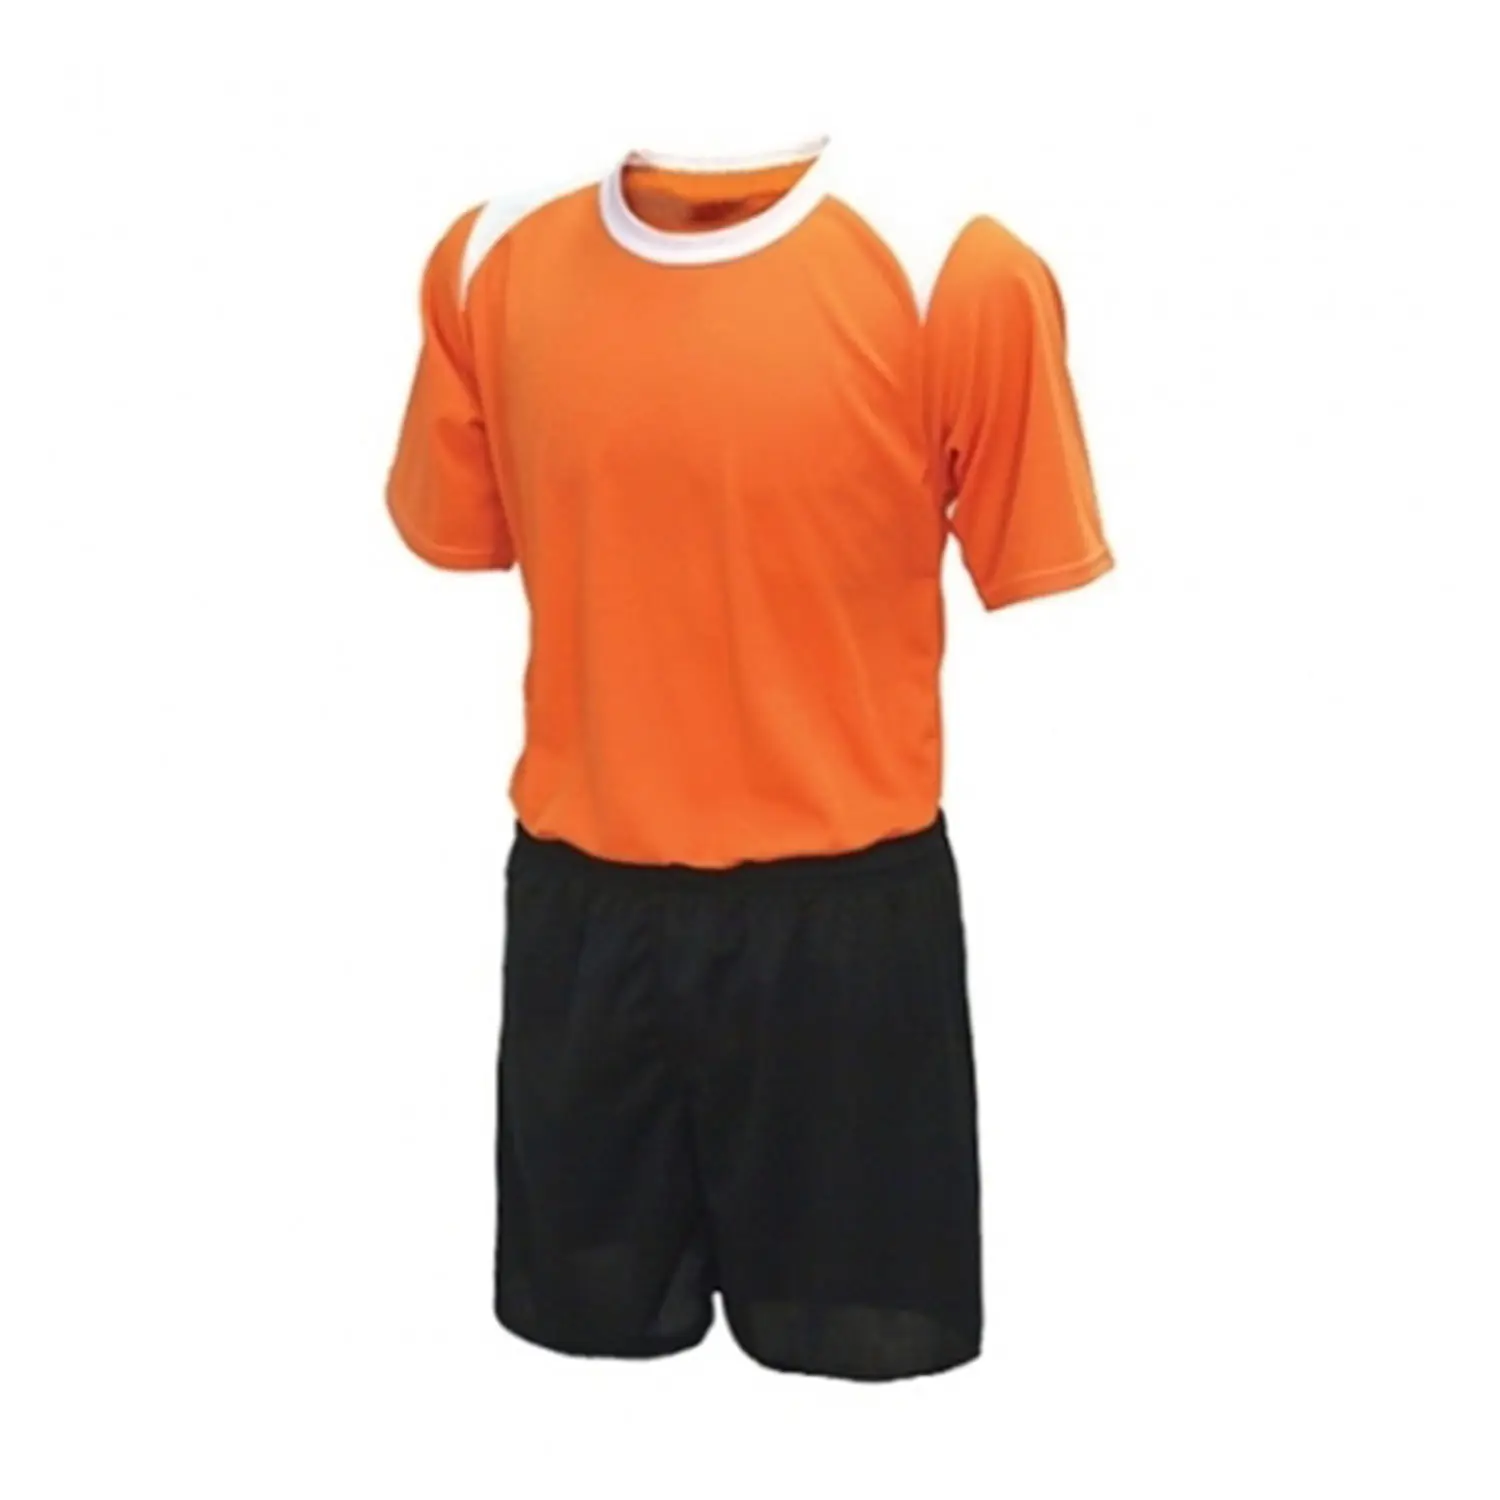 Conjuntos de camiseta de fútbol para niños, Kits de fútbol para niños, uniformes deportivos, uniforme de entrenamiento de fútbol, gran oferta, novedad